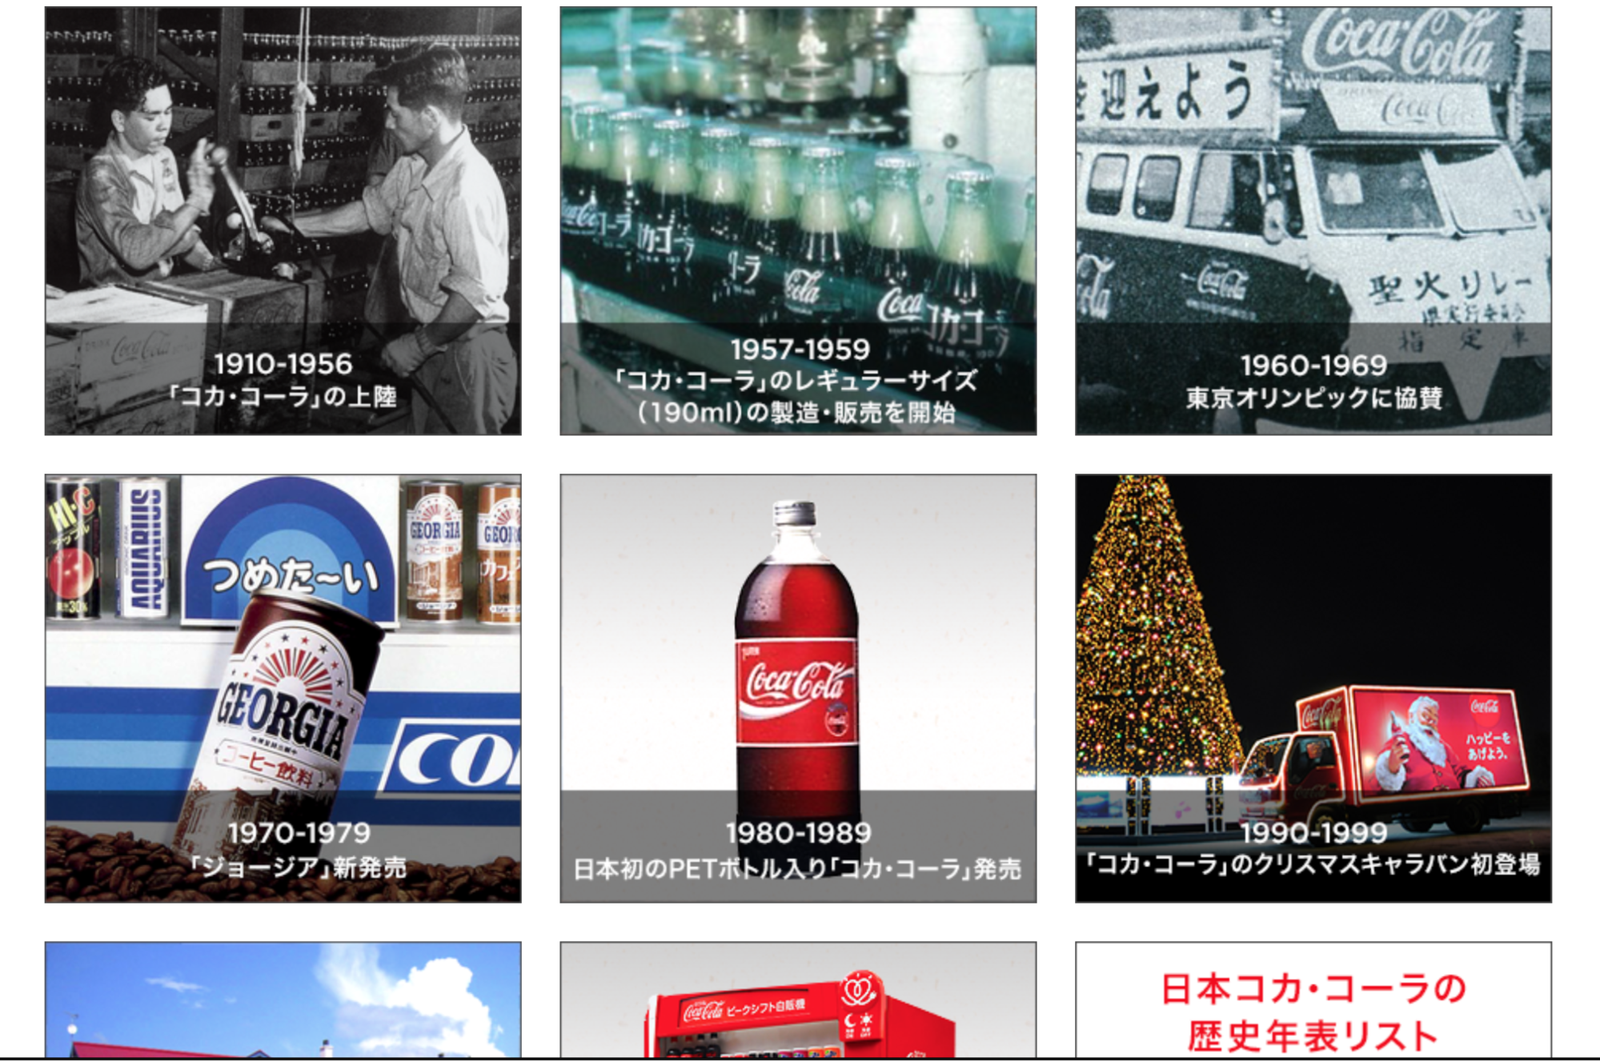 時系列で情報が表示されているコカ・コーラの例